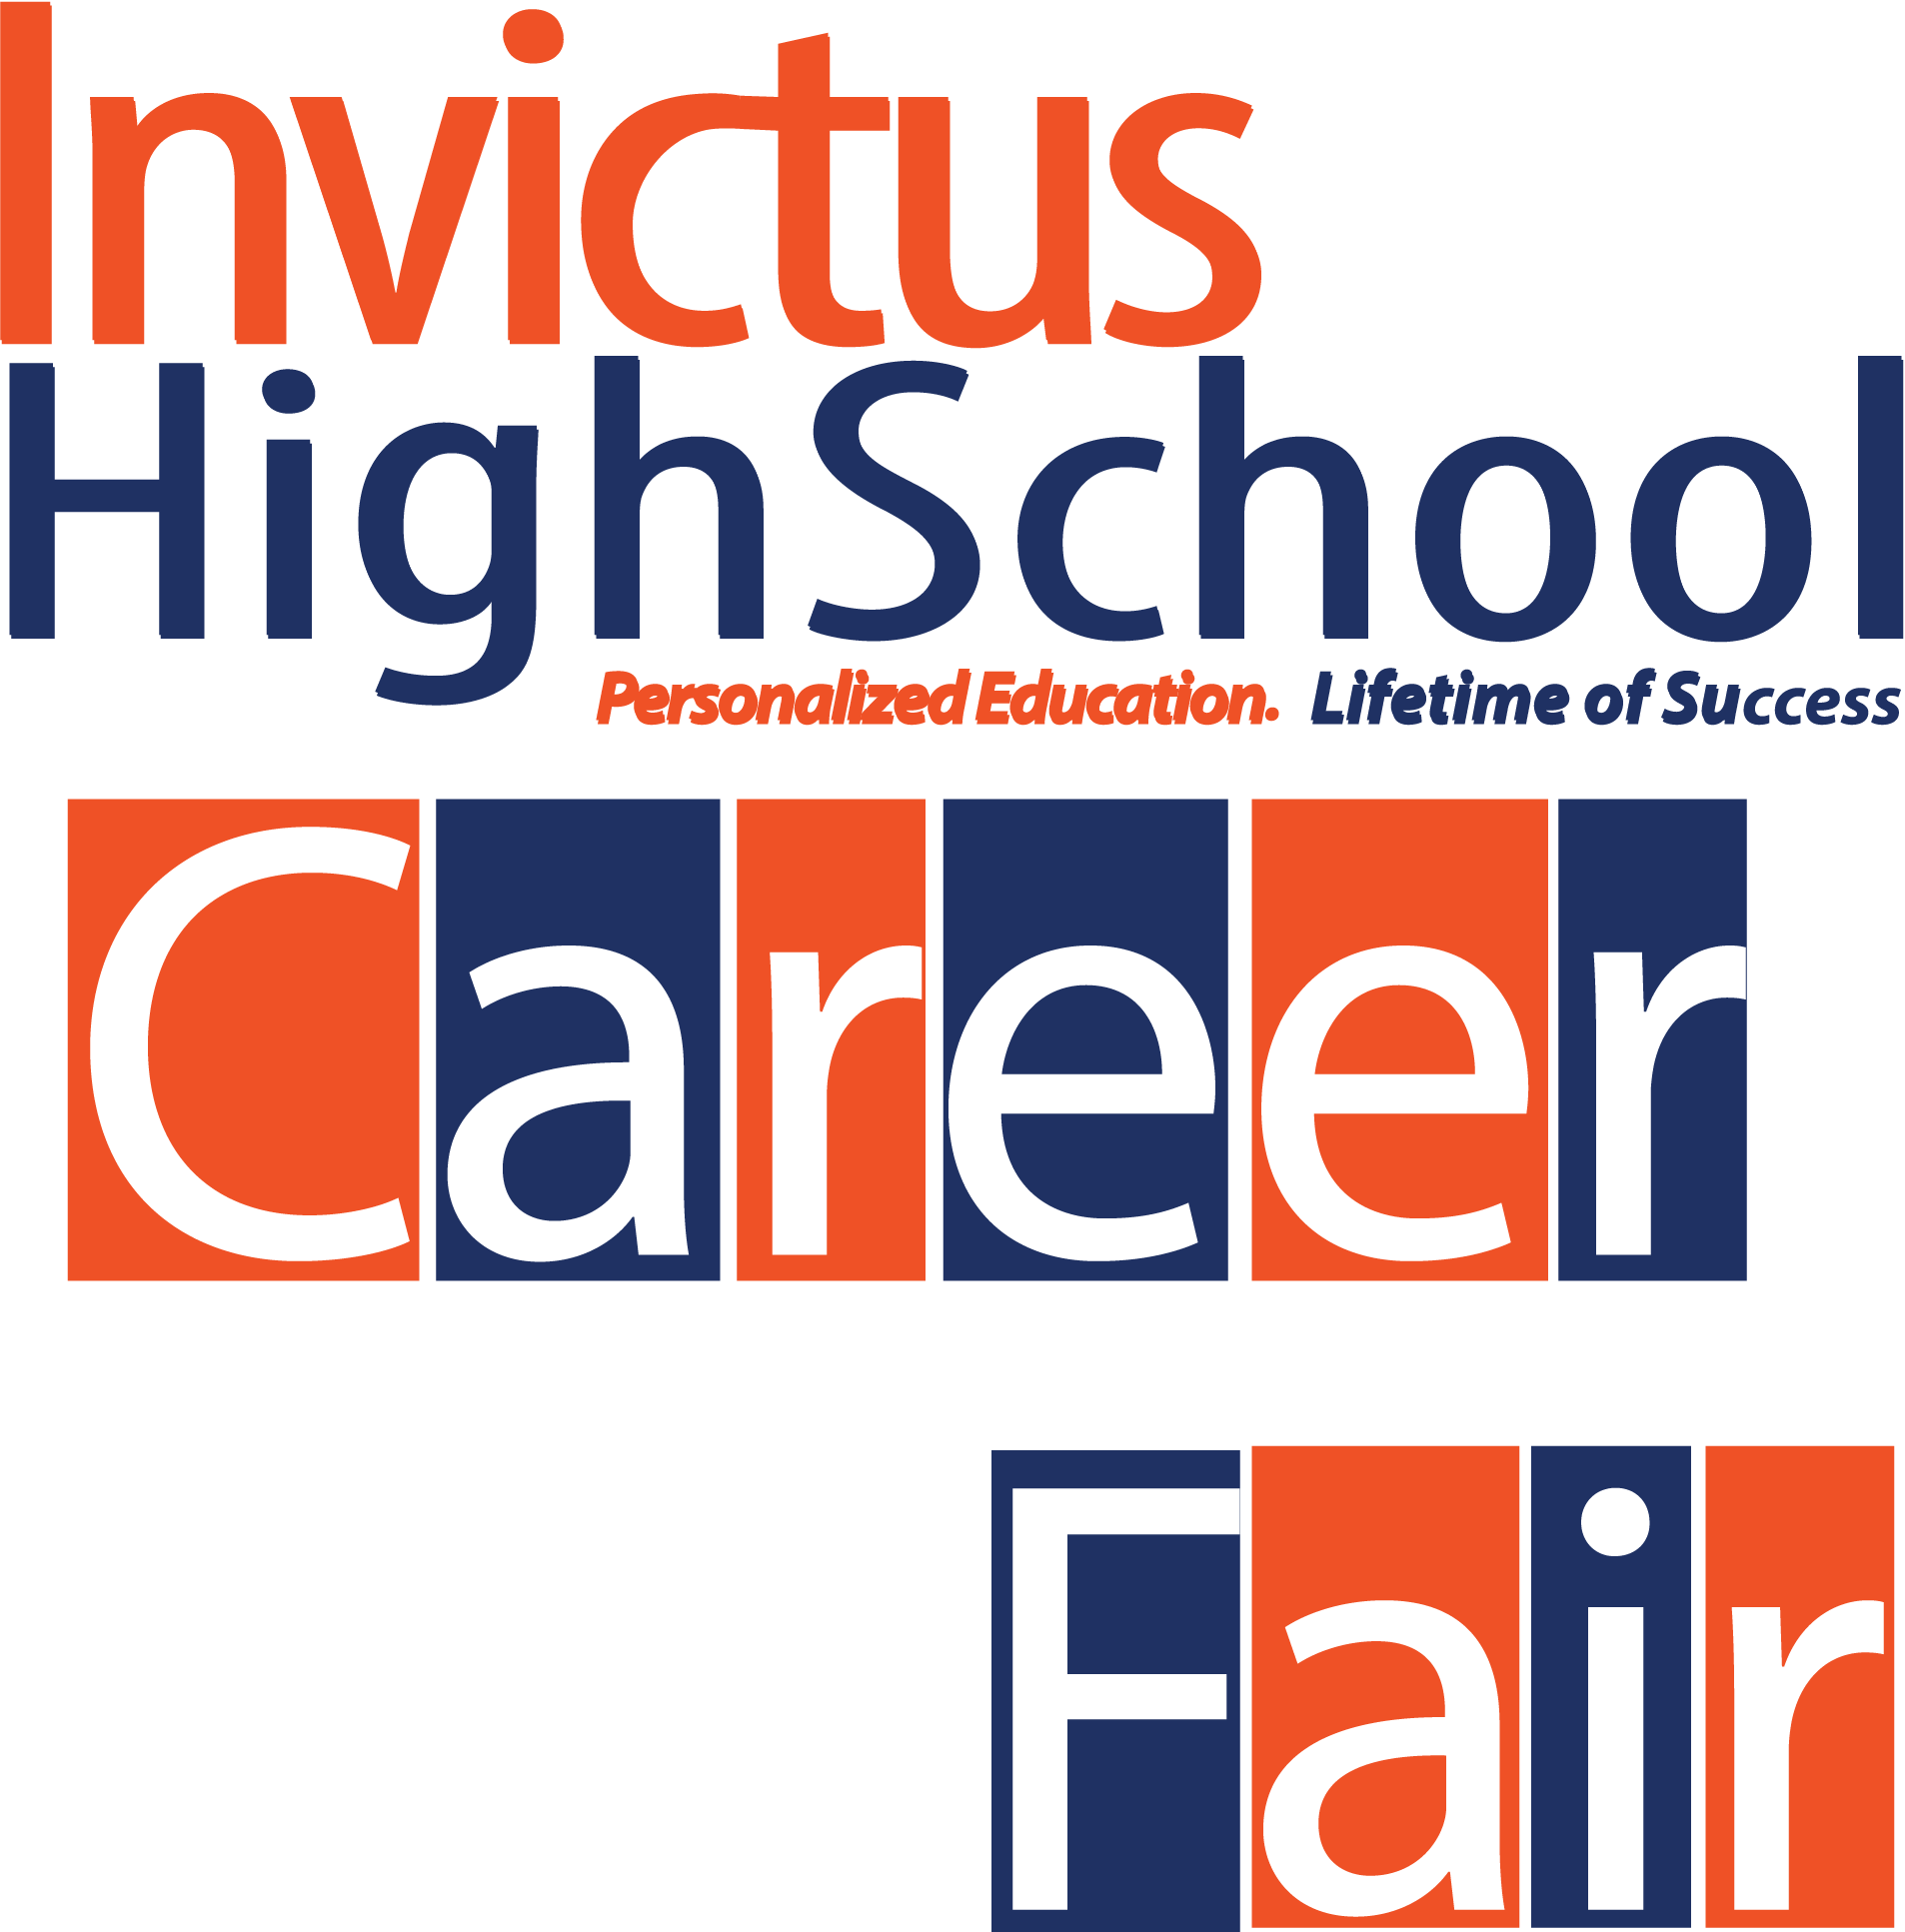 Invictus High School Career Fair